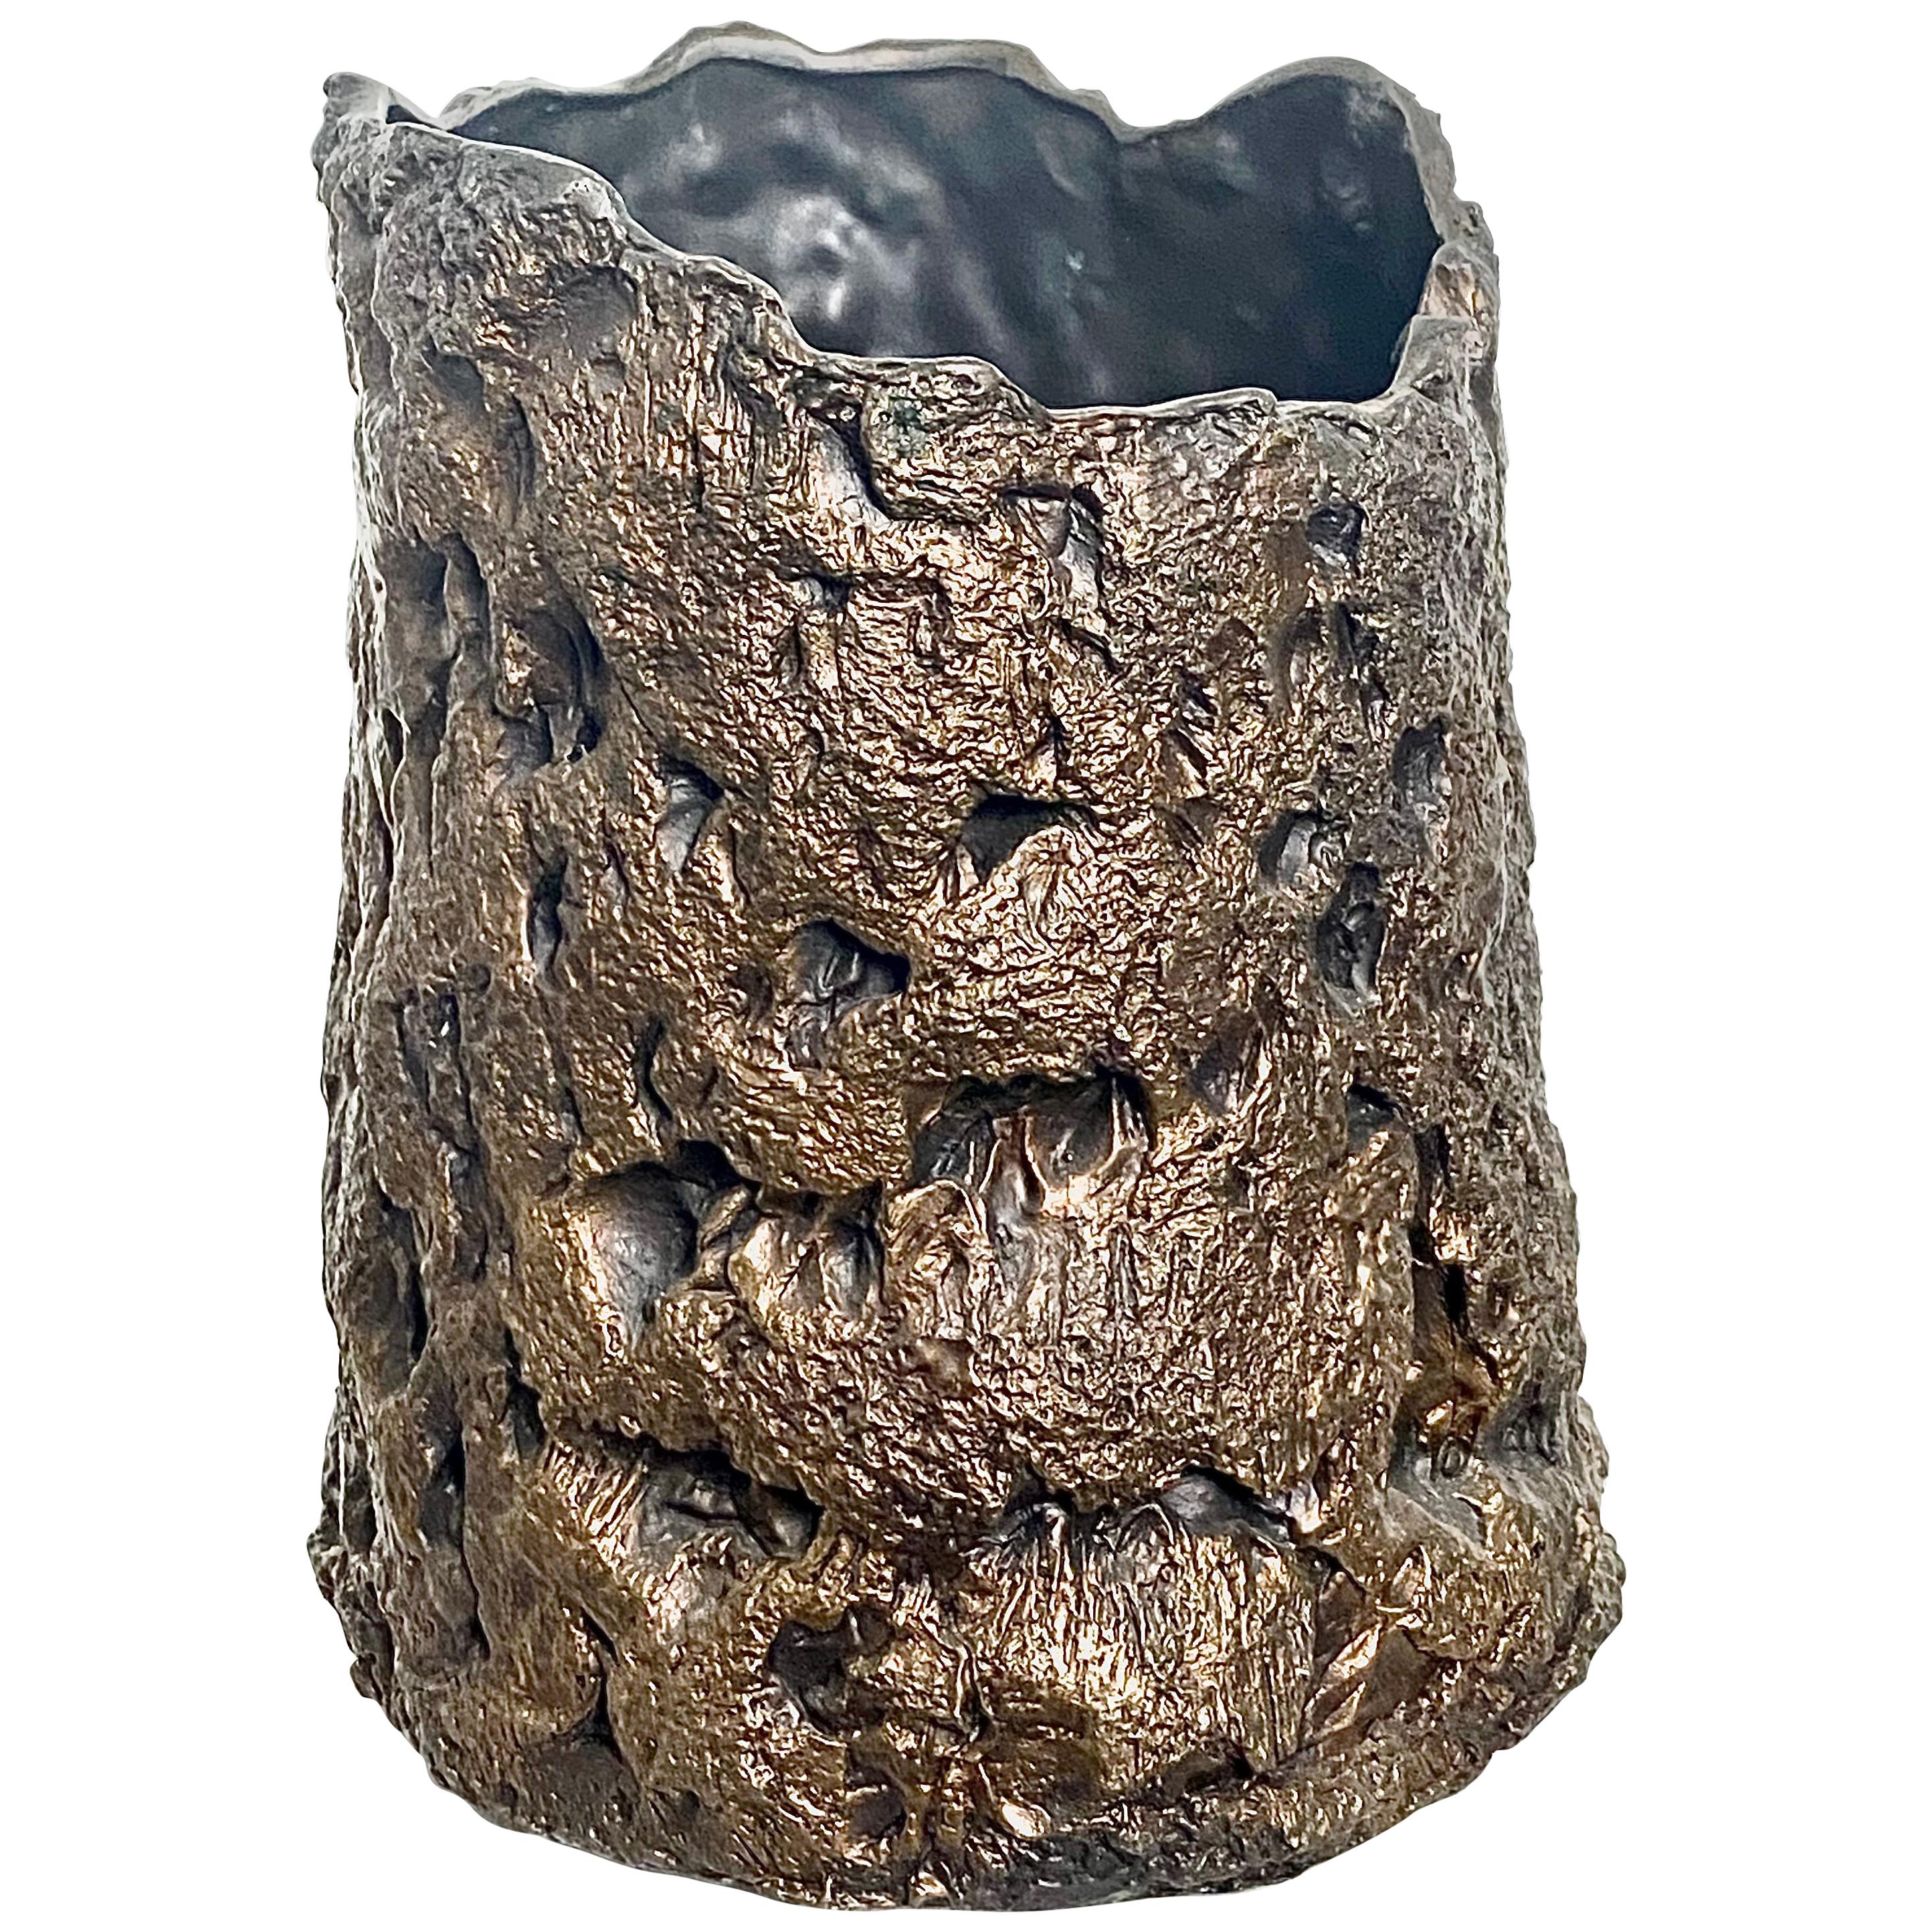  Vase sculptural en bronze, XXIe siècle de Mattia Biagi